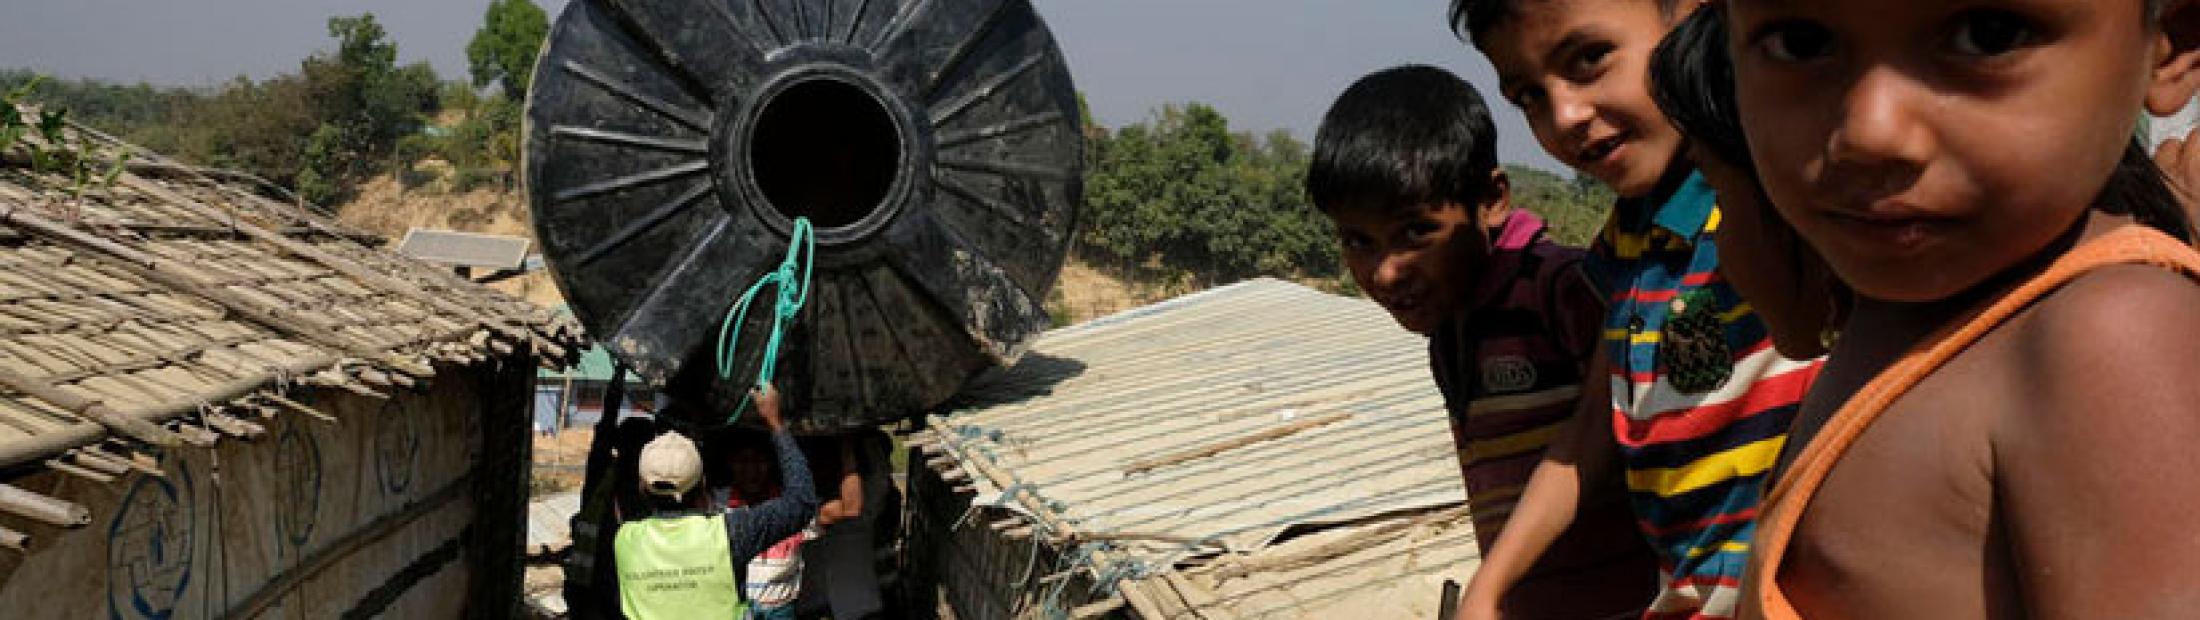 Contaminación del agua, soluciones para los campos de refugiados rohingya